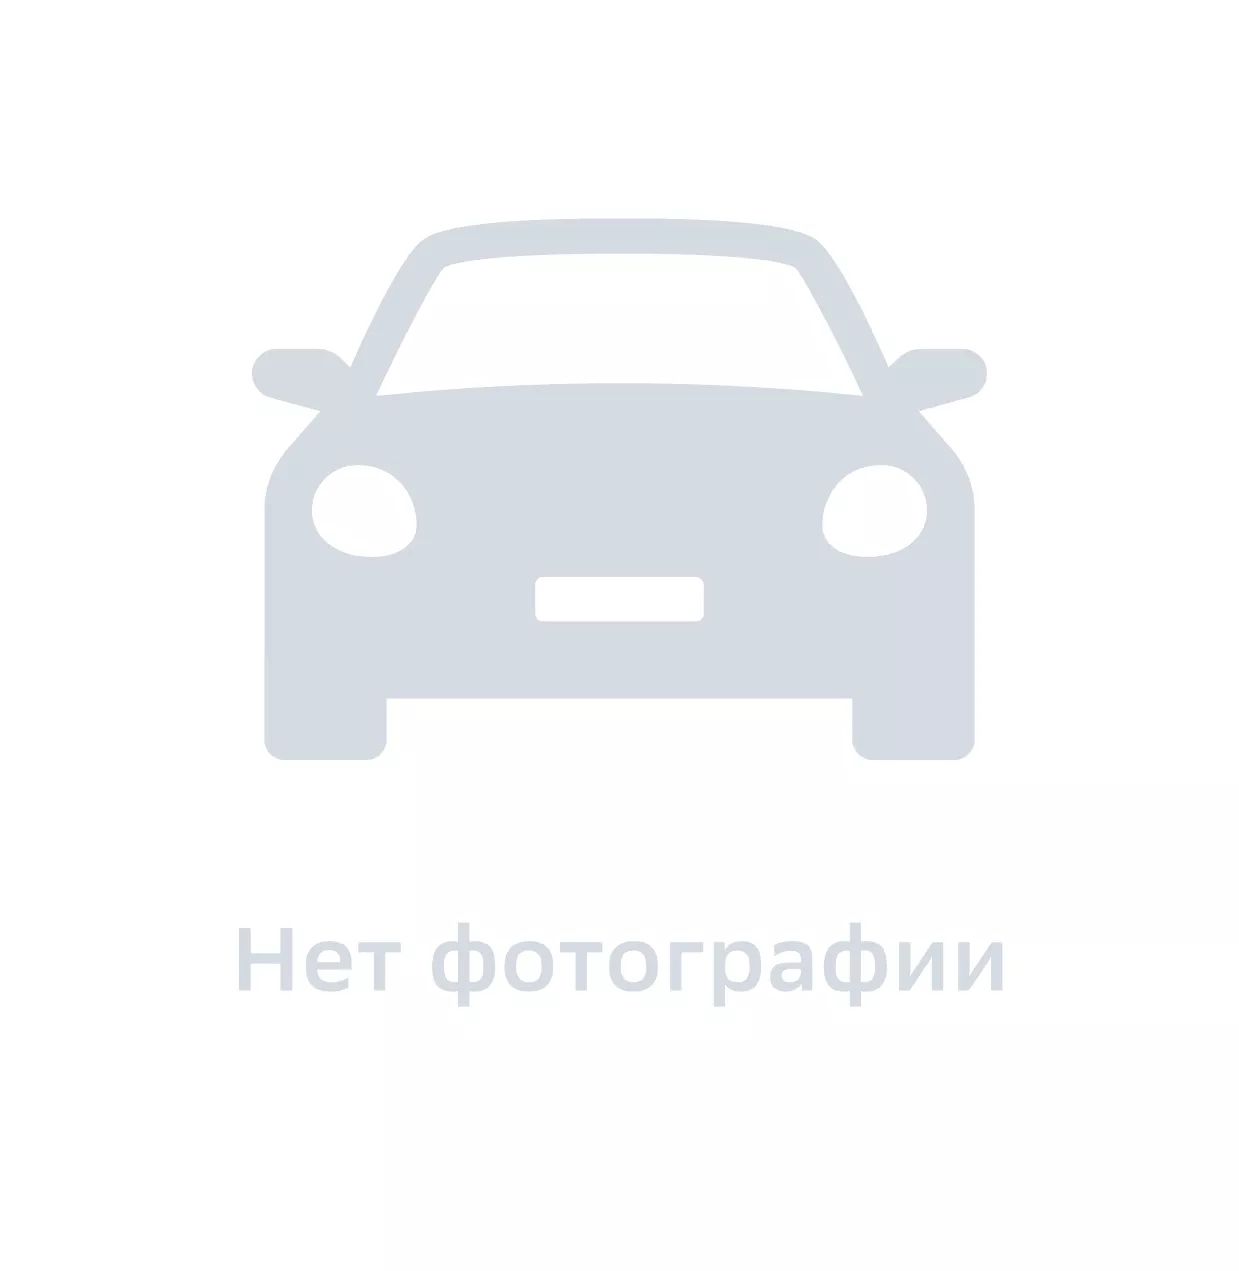 Болт автомобильный, GM DAT, арт. 94500833, цена за 1 шт.